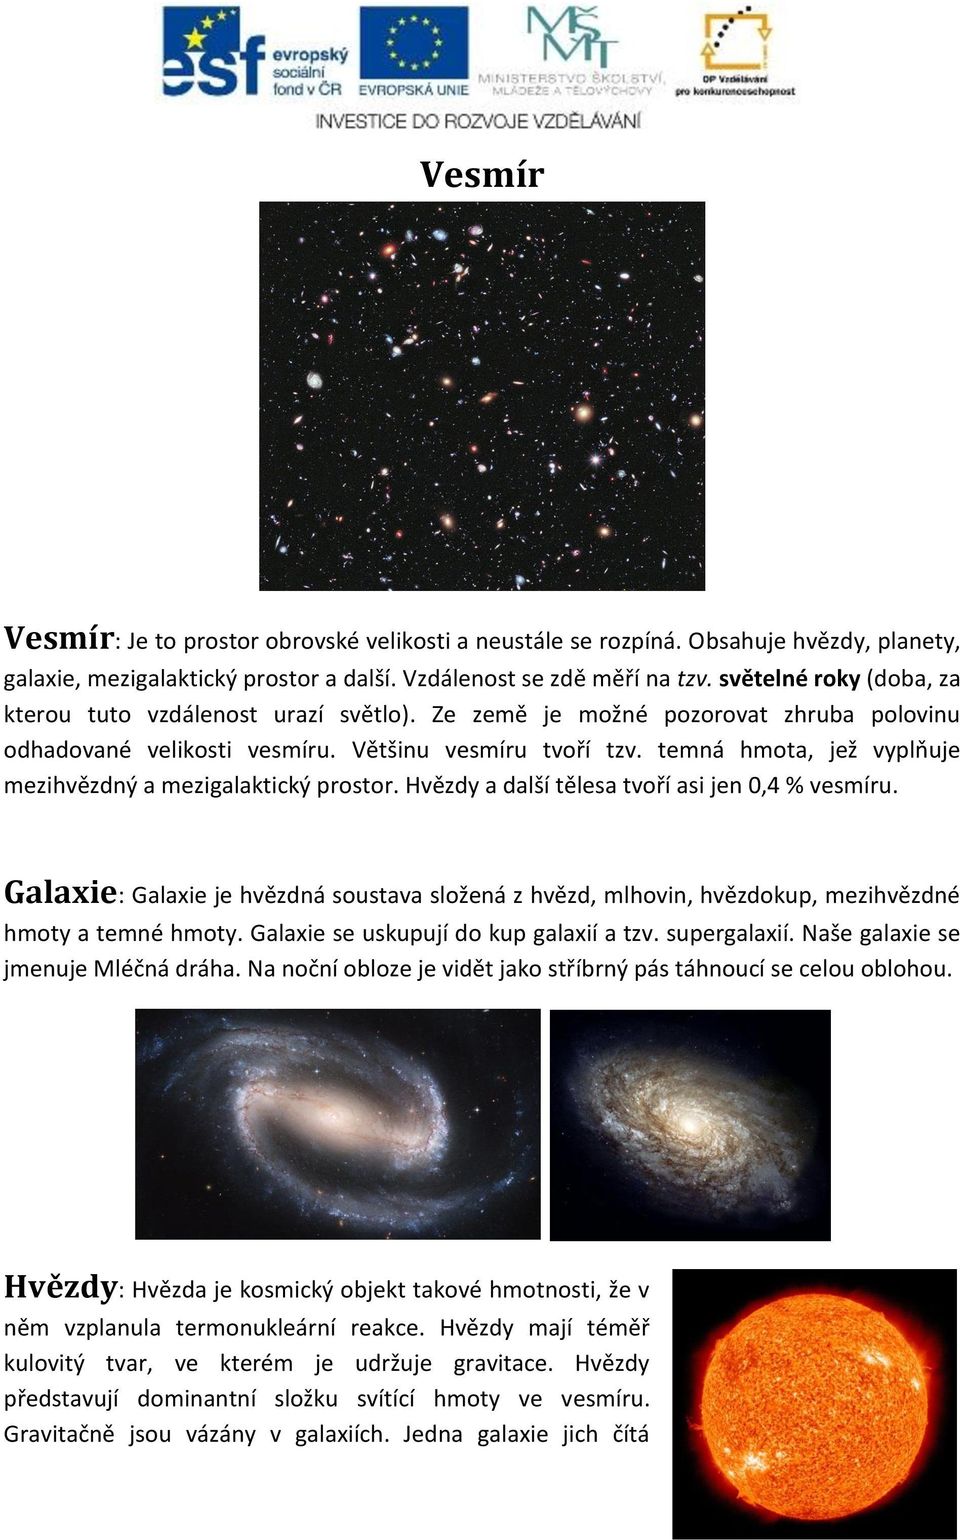 temná hmota, jež vyplňuje mezihvězdný a mezigalaktický prostor. Hvězdy a další tělesa tvoří asi jen 0,4 % vesmíru.